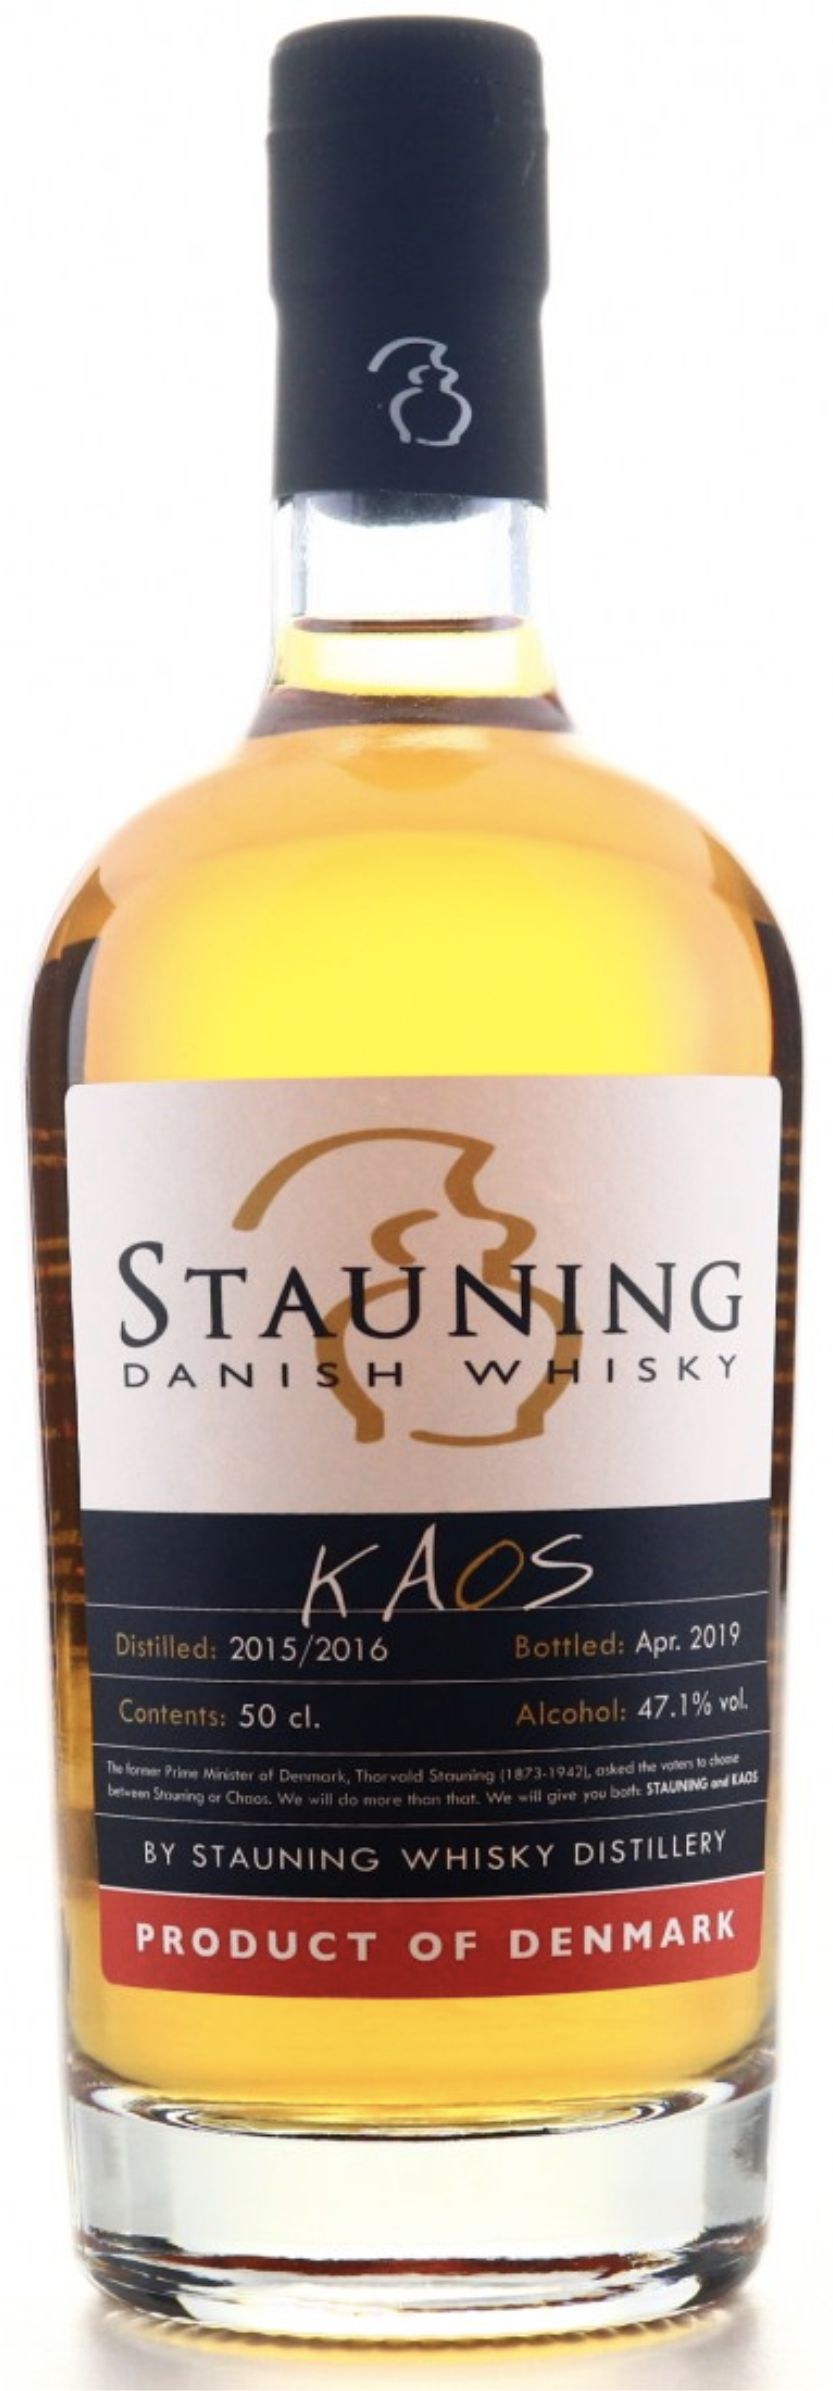 Виски Стаунинг Каос, 0.5 л